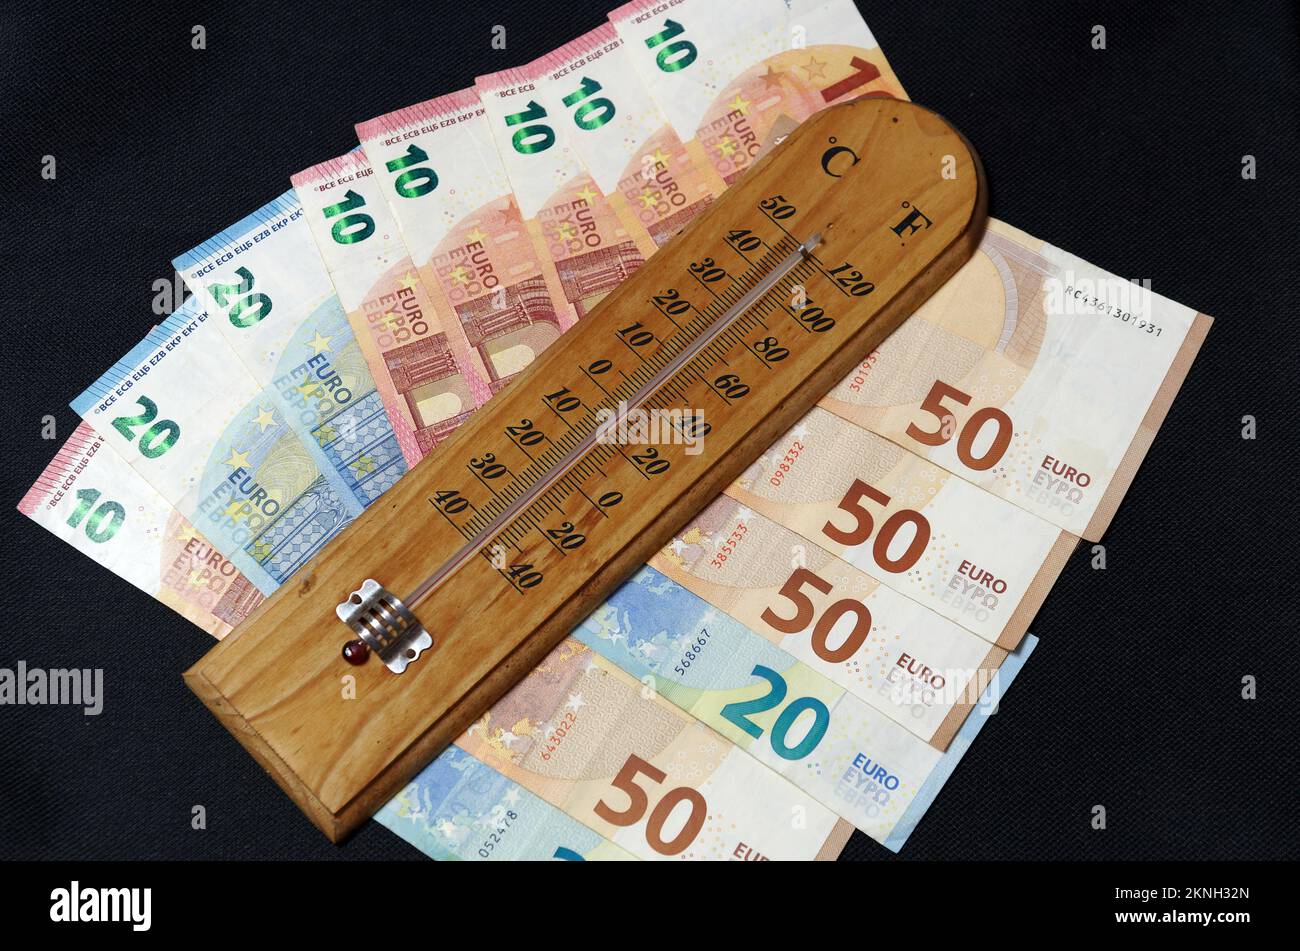 Simbolo immagine aumento dei costi di riscaldamento: Termometro con banconote in euro Foto Stock